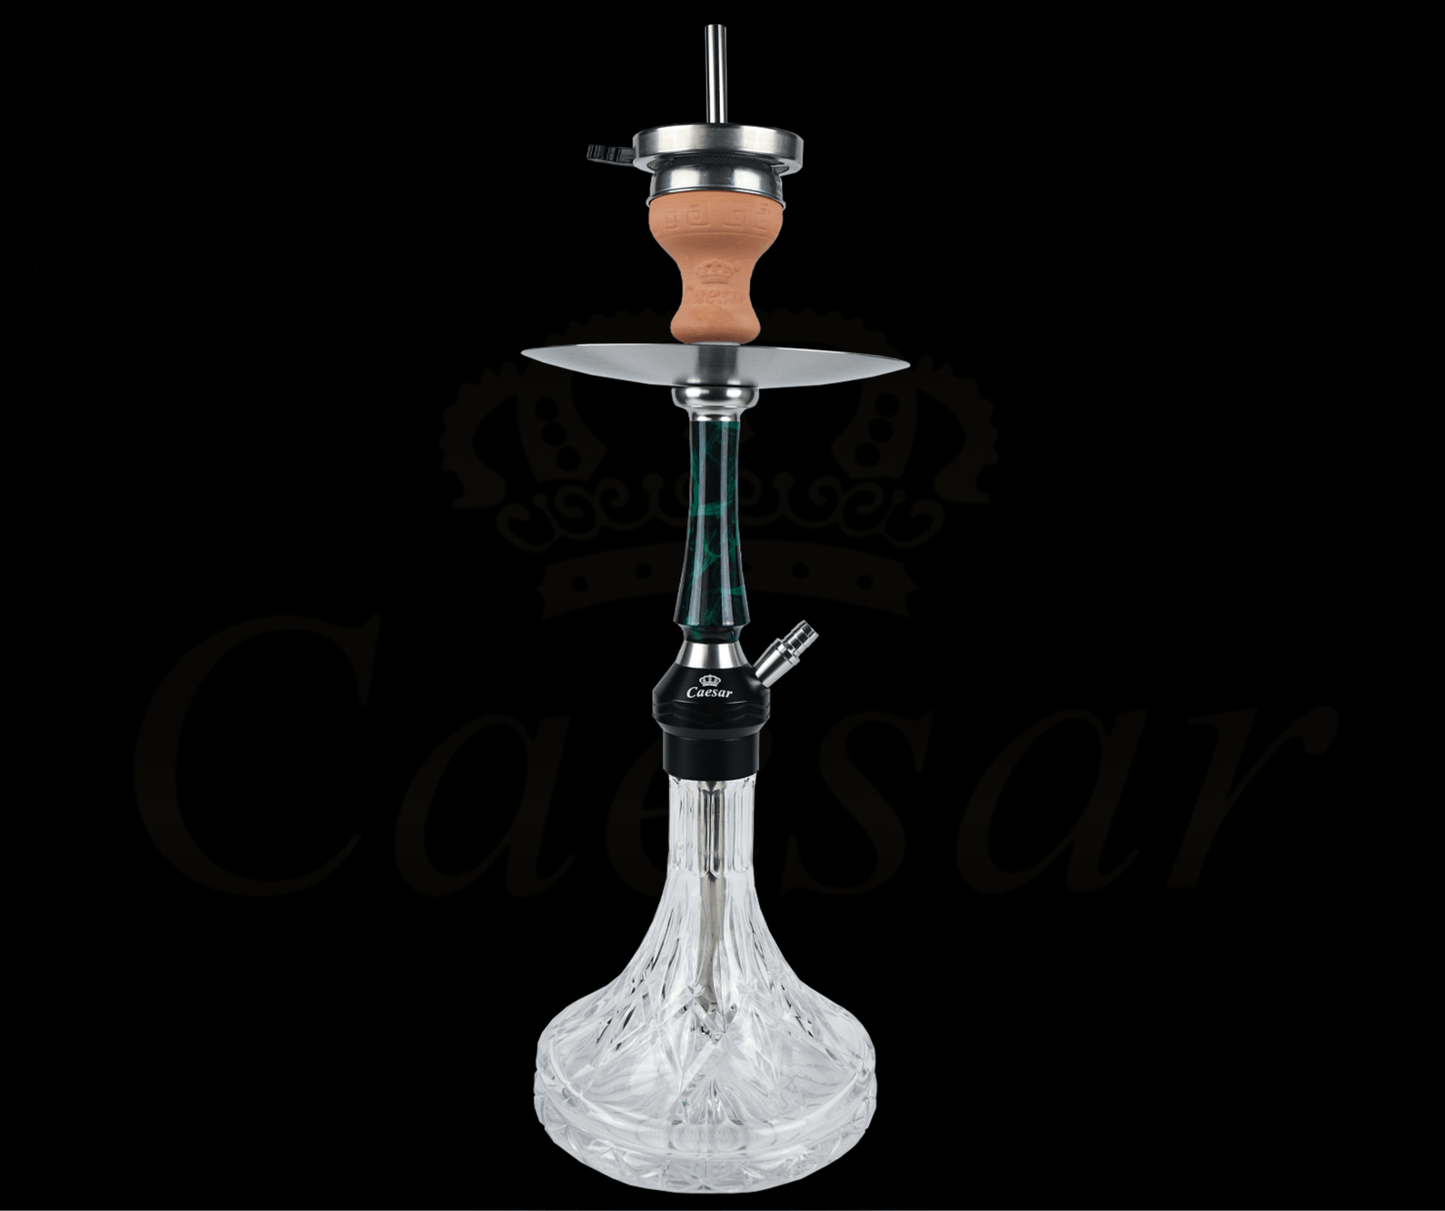 Caesar 03 - A - Green / Transparent - Caesar Shisha